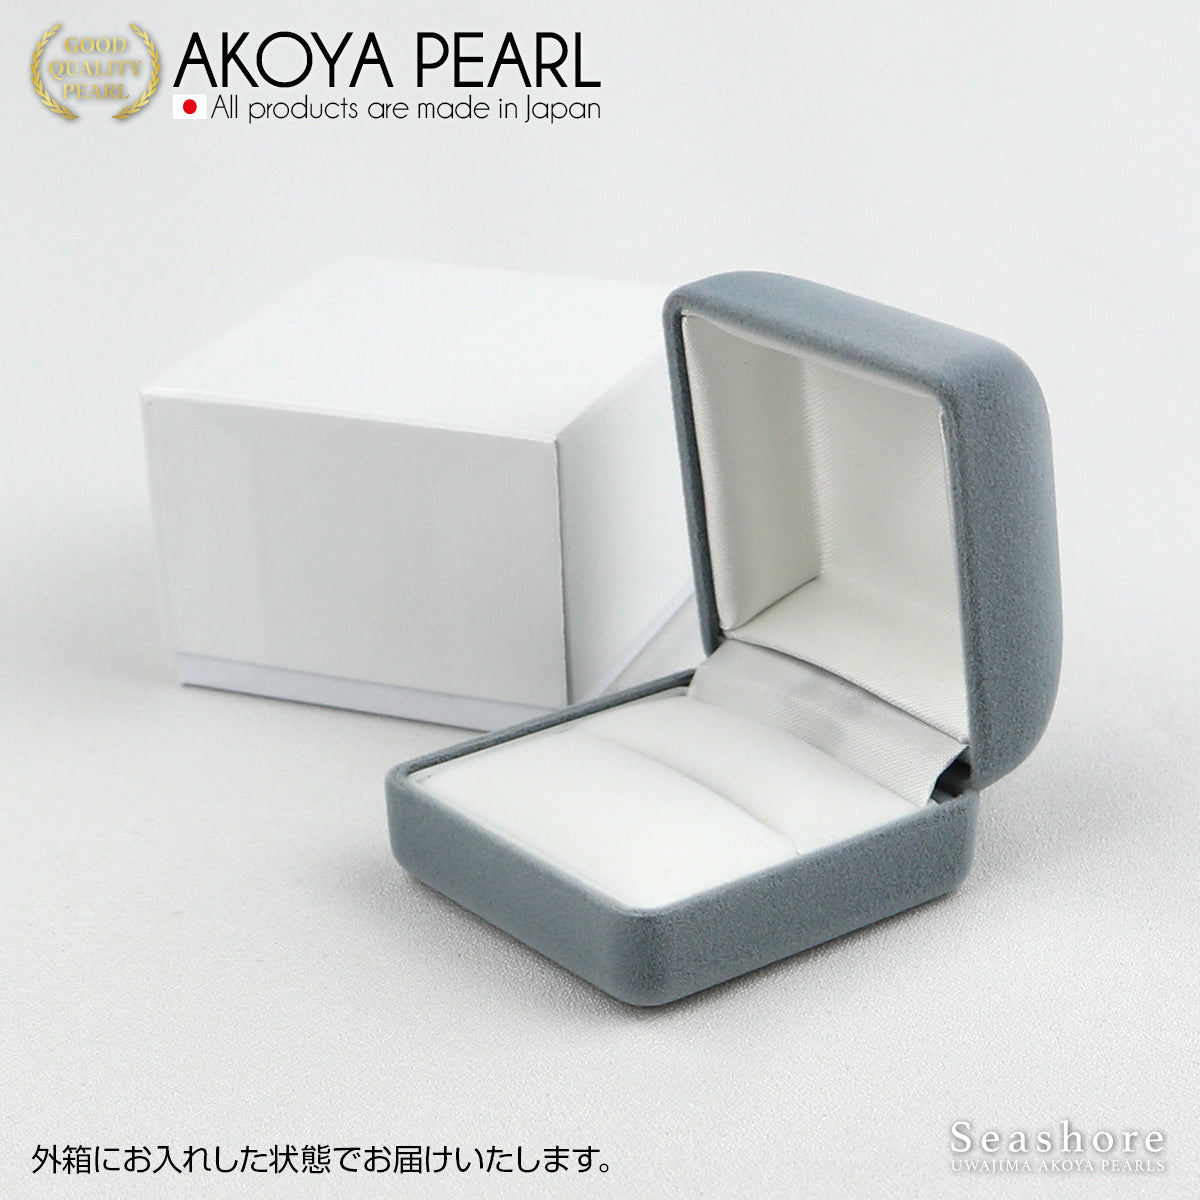 戒指盒 戒指盒 紧凑型丝绒织物珍珠盒 灰色 (2.0.745.1557)